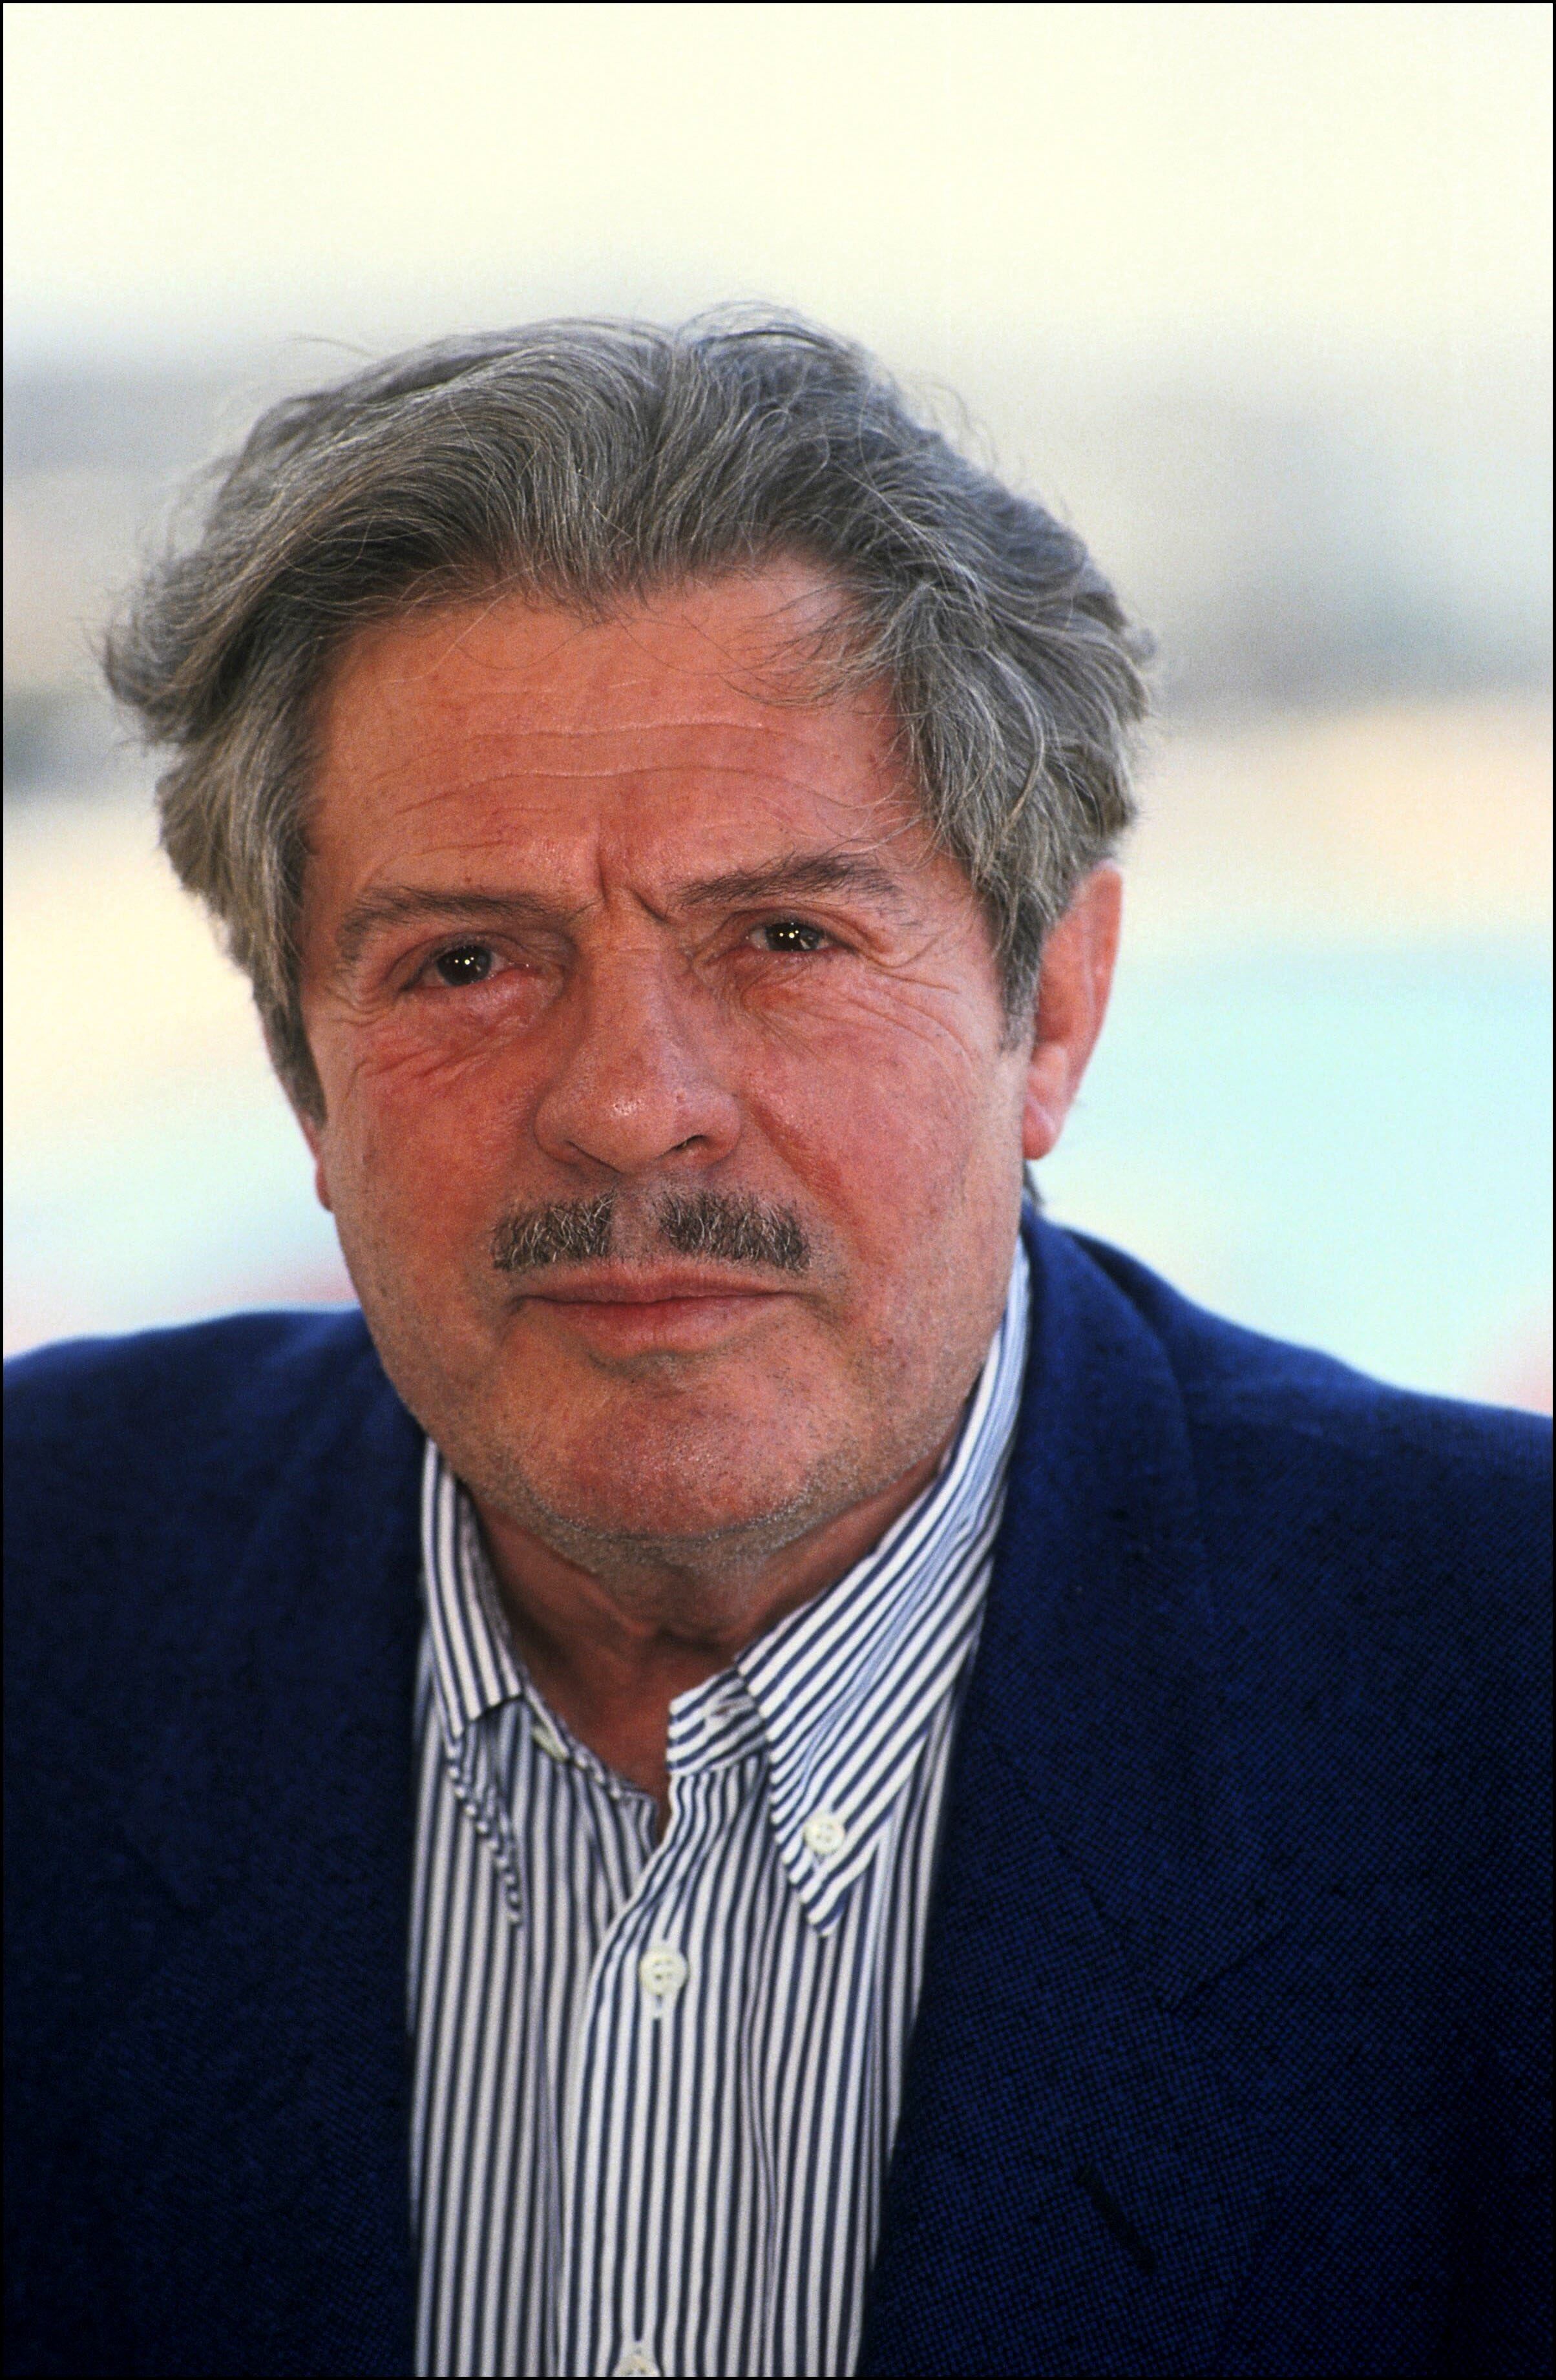 Marcello Mastroianni in Cannes in 1991.